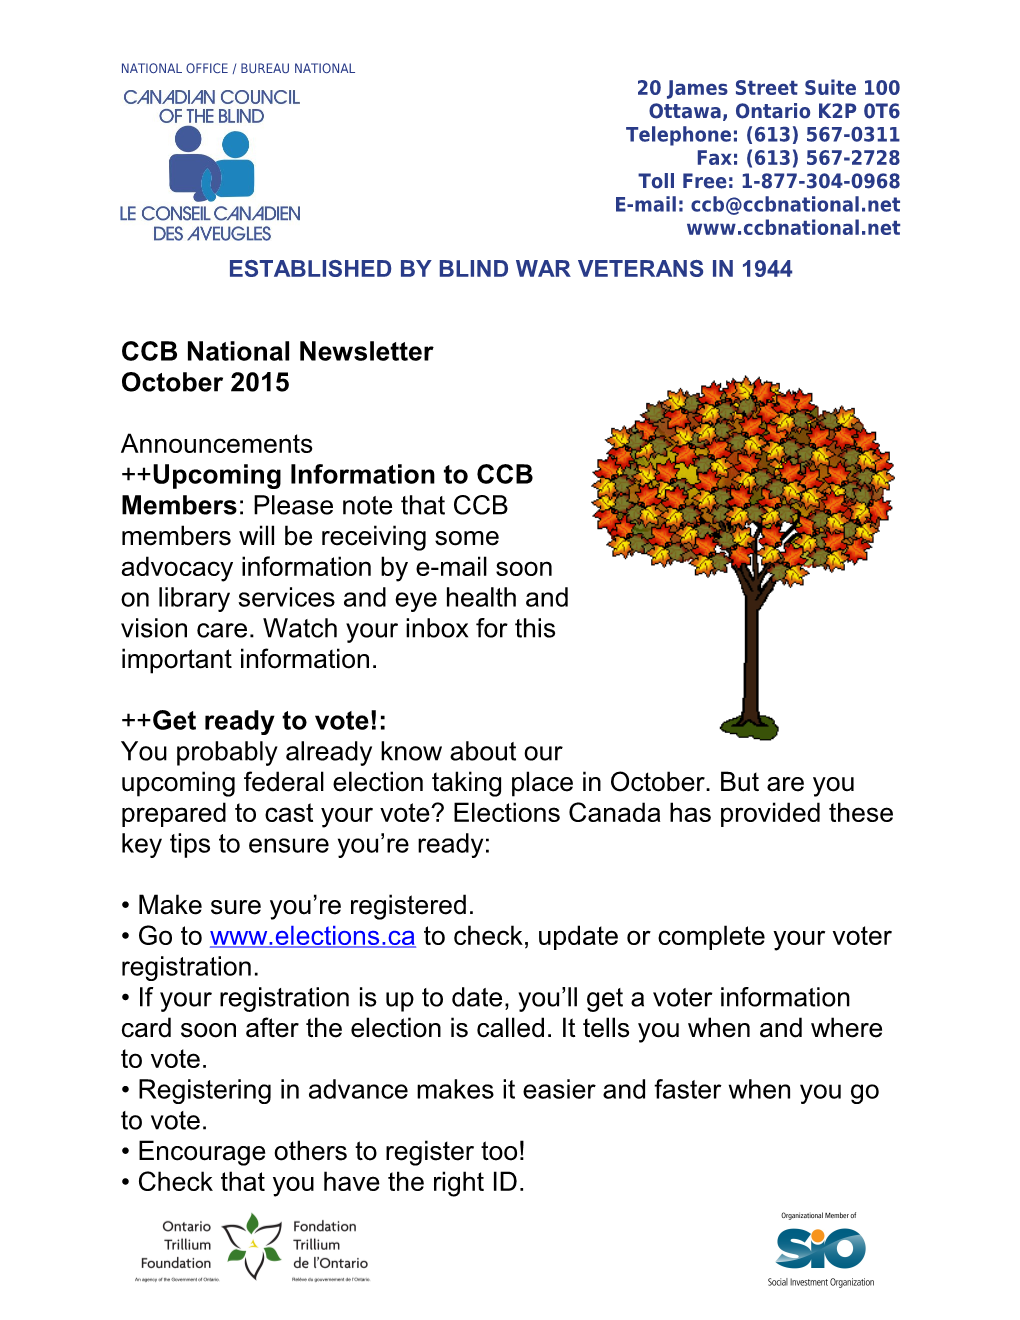 CCB National Newsletter